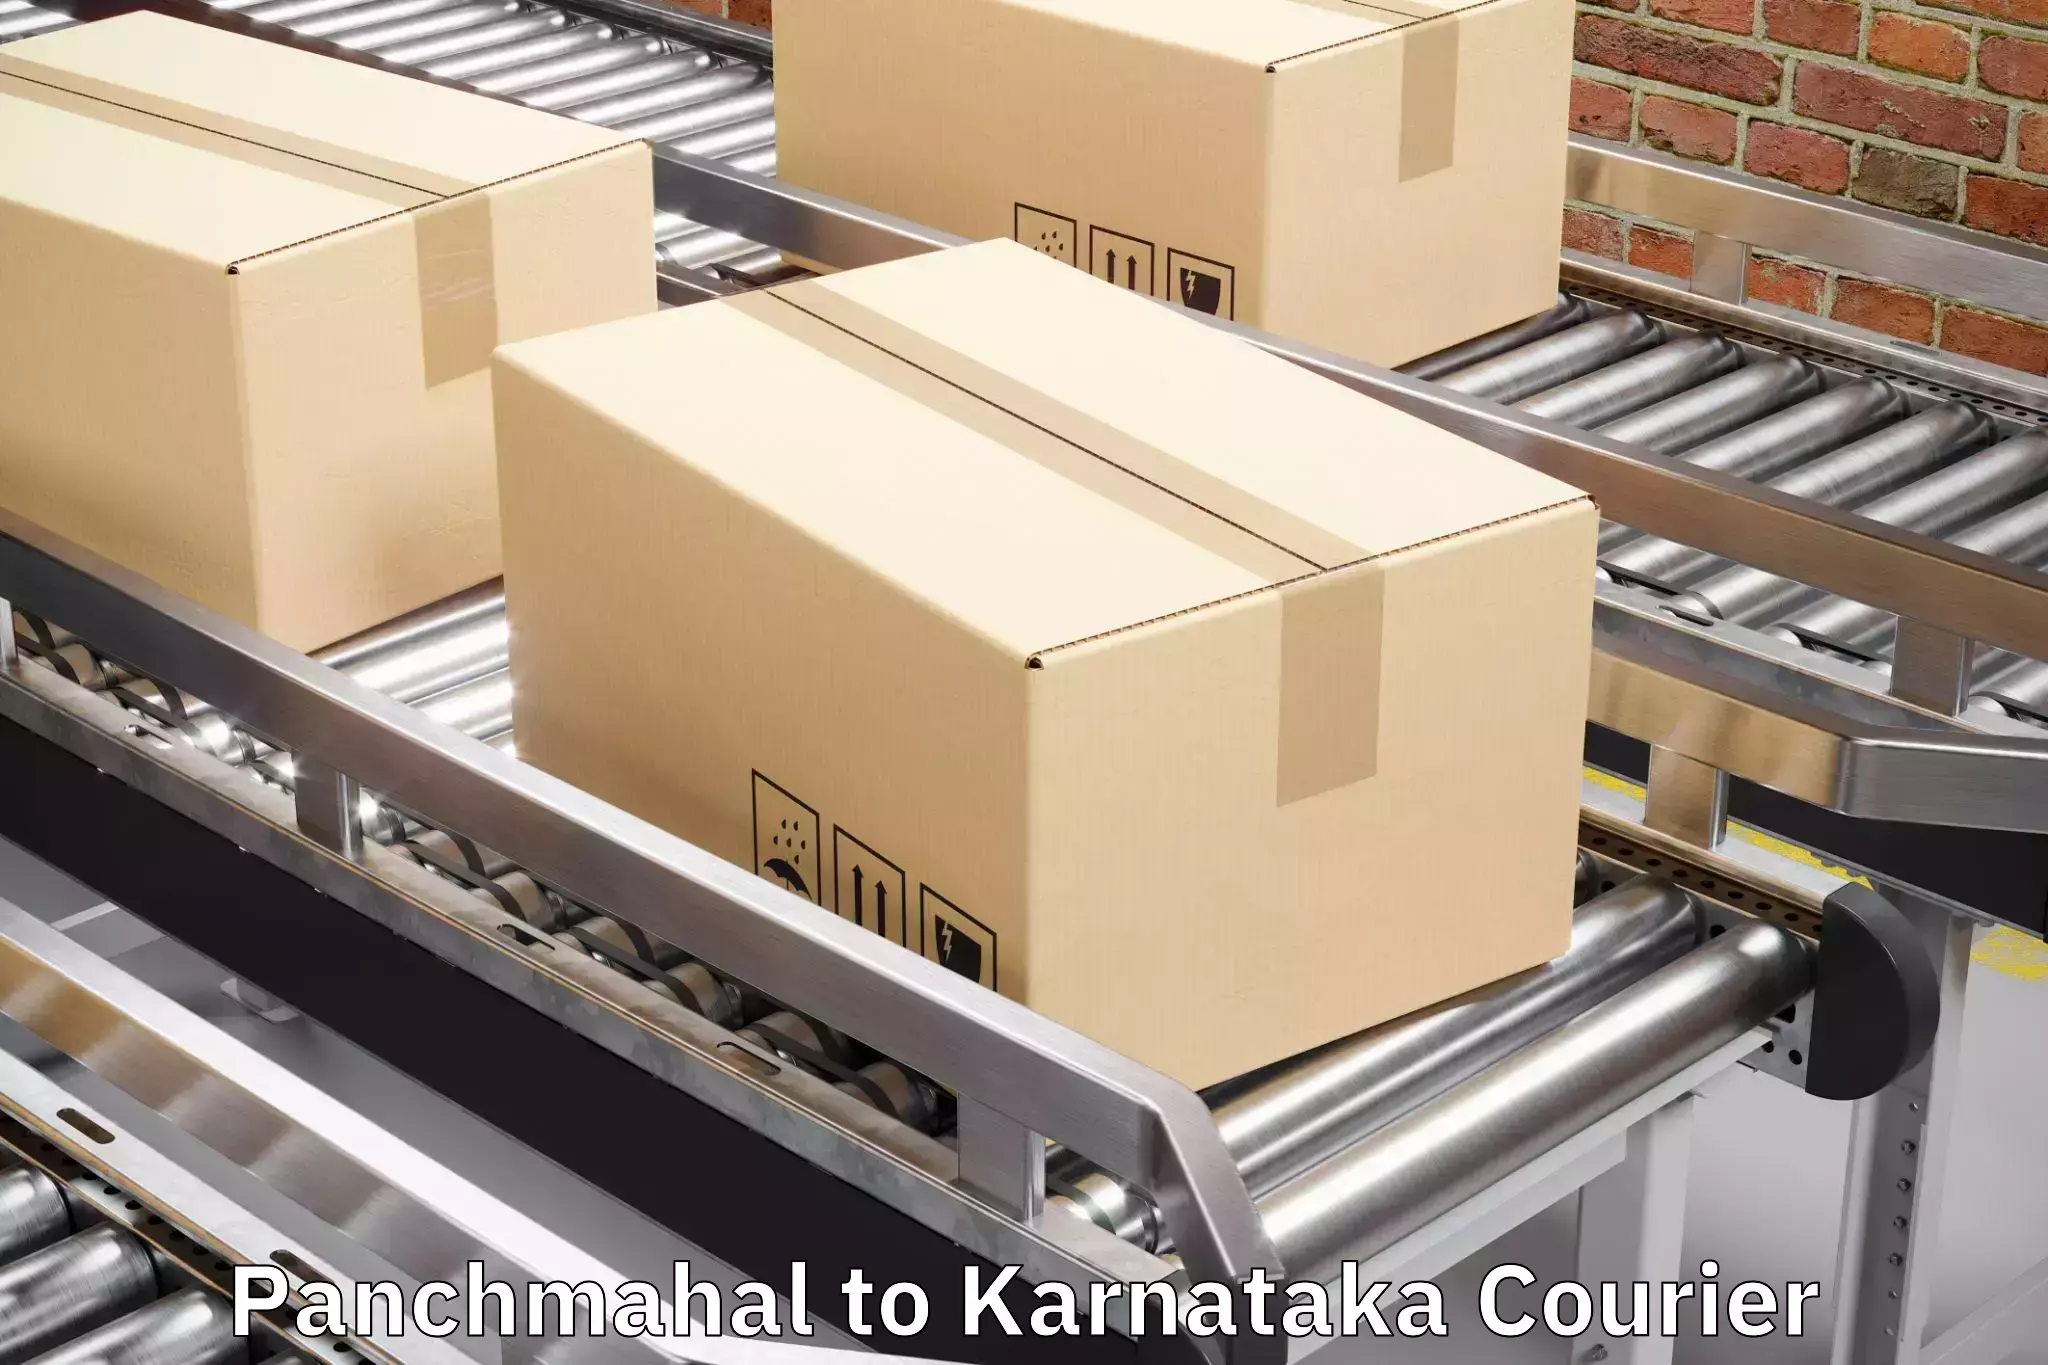 Luggage transport consulting Panchmahal to Karnataka